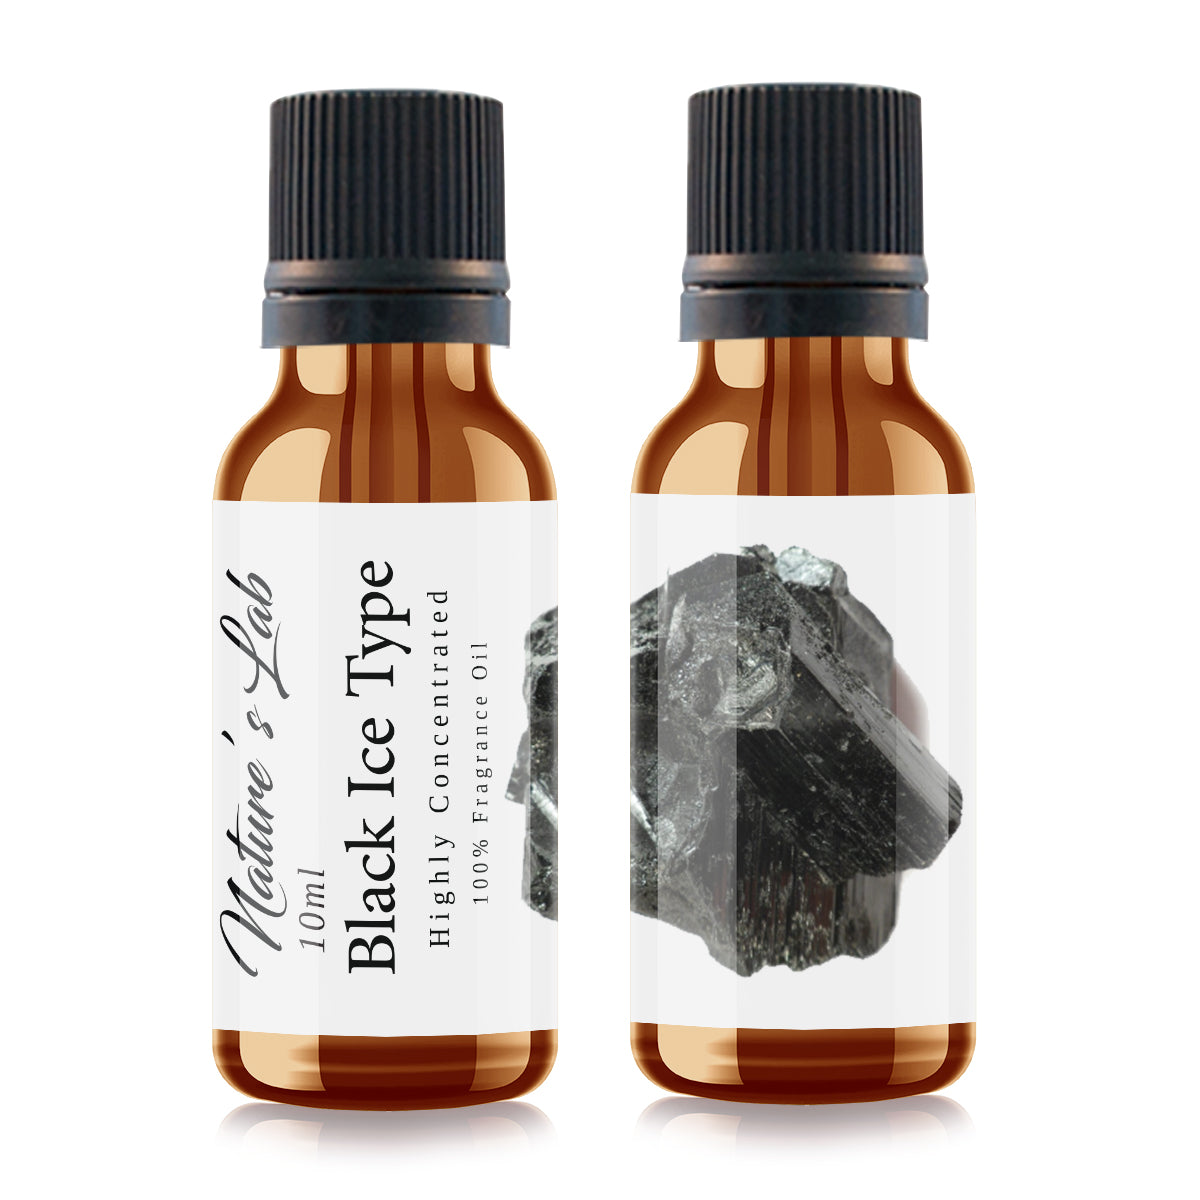 Black Ice - Fragrance Oil